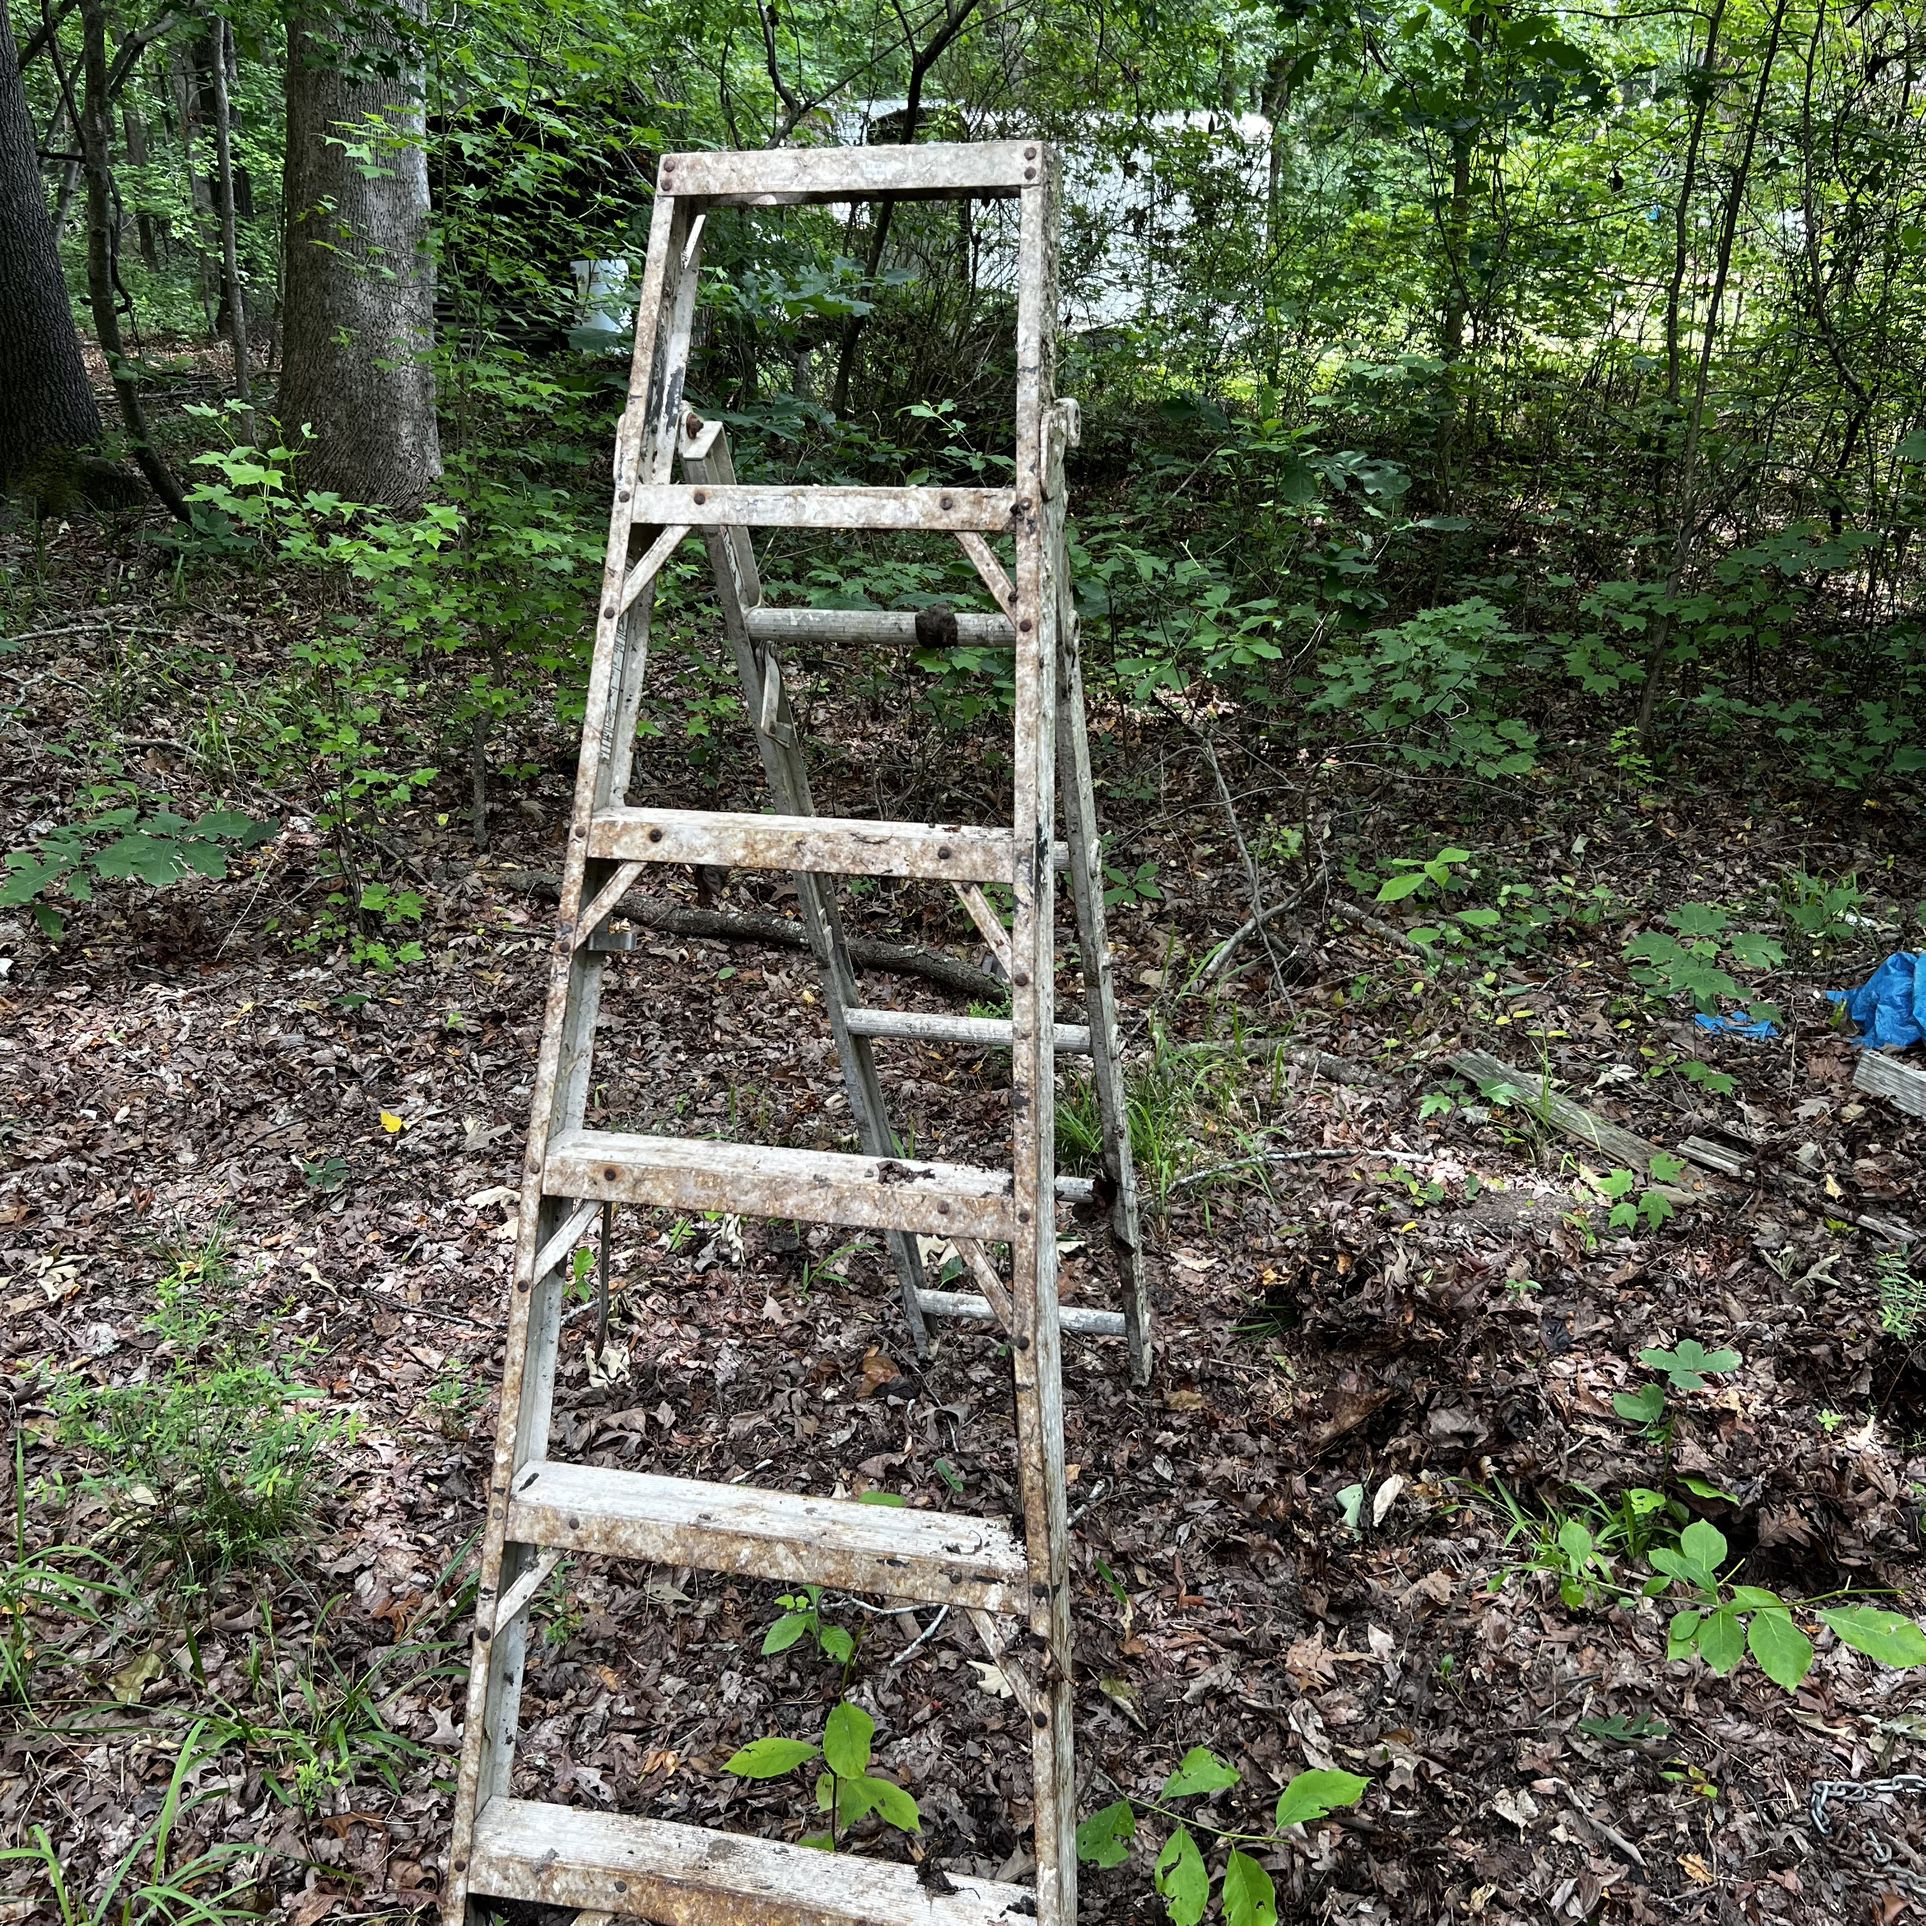 6’ Aluminum Ladder 